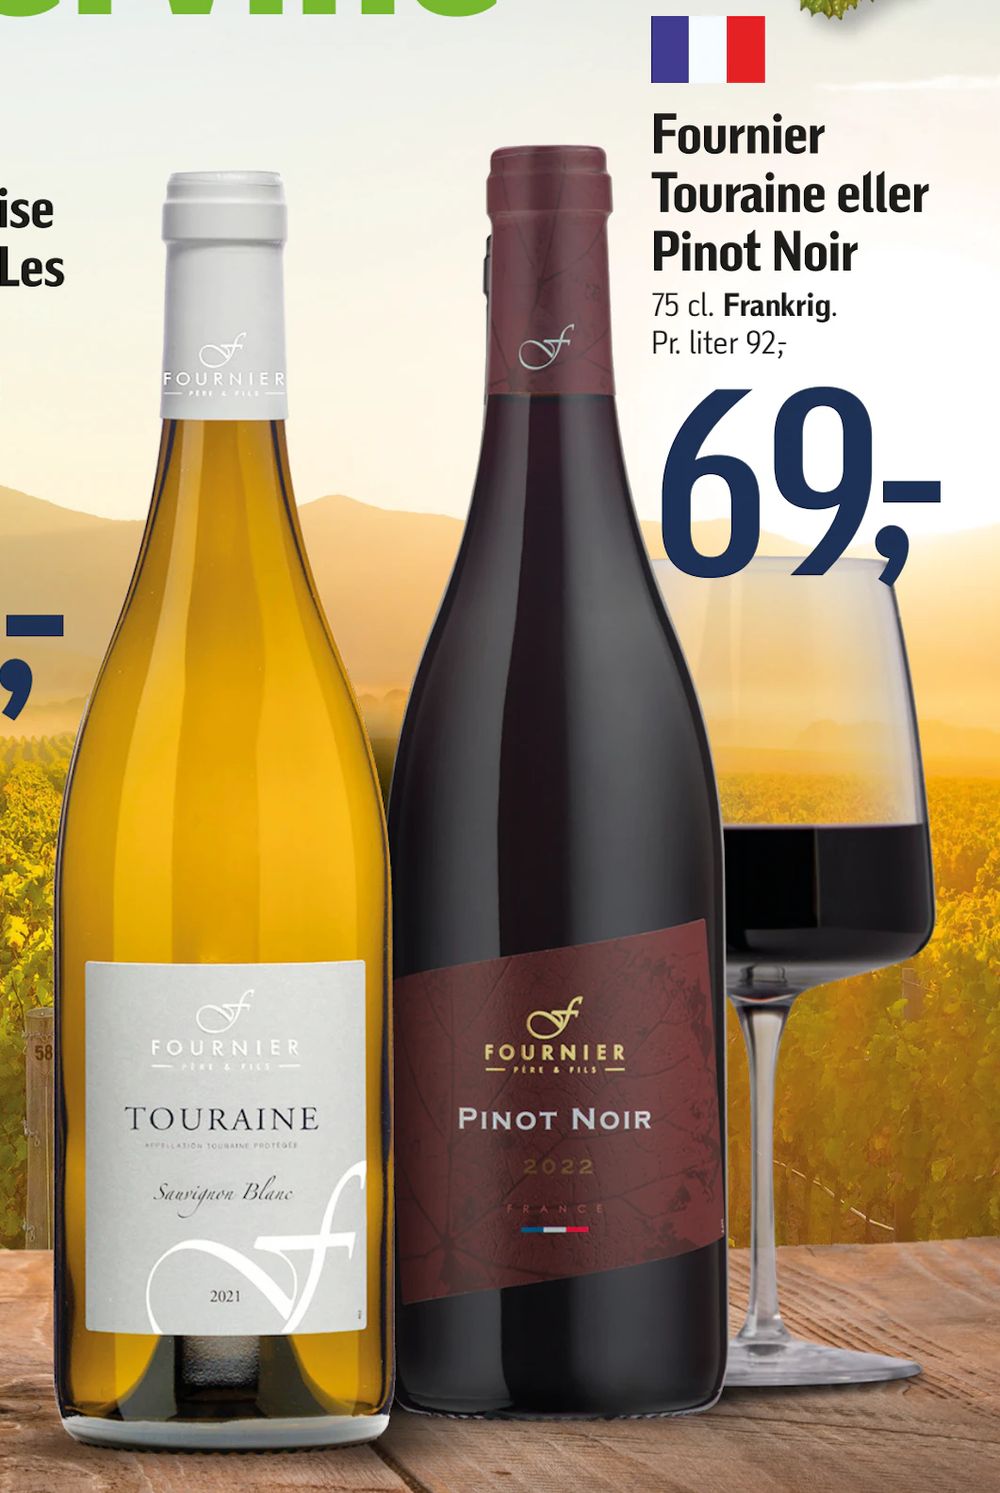 Tilbud på Fournier Touraine eller Pinot Noir fra føtex til 69 kr.